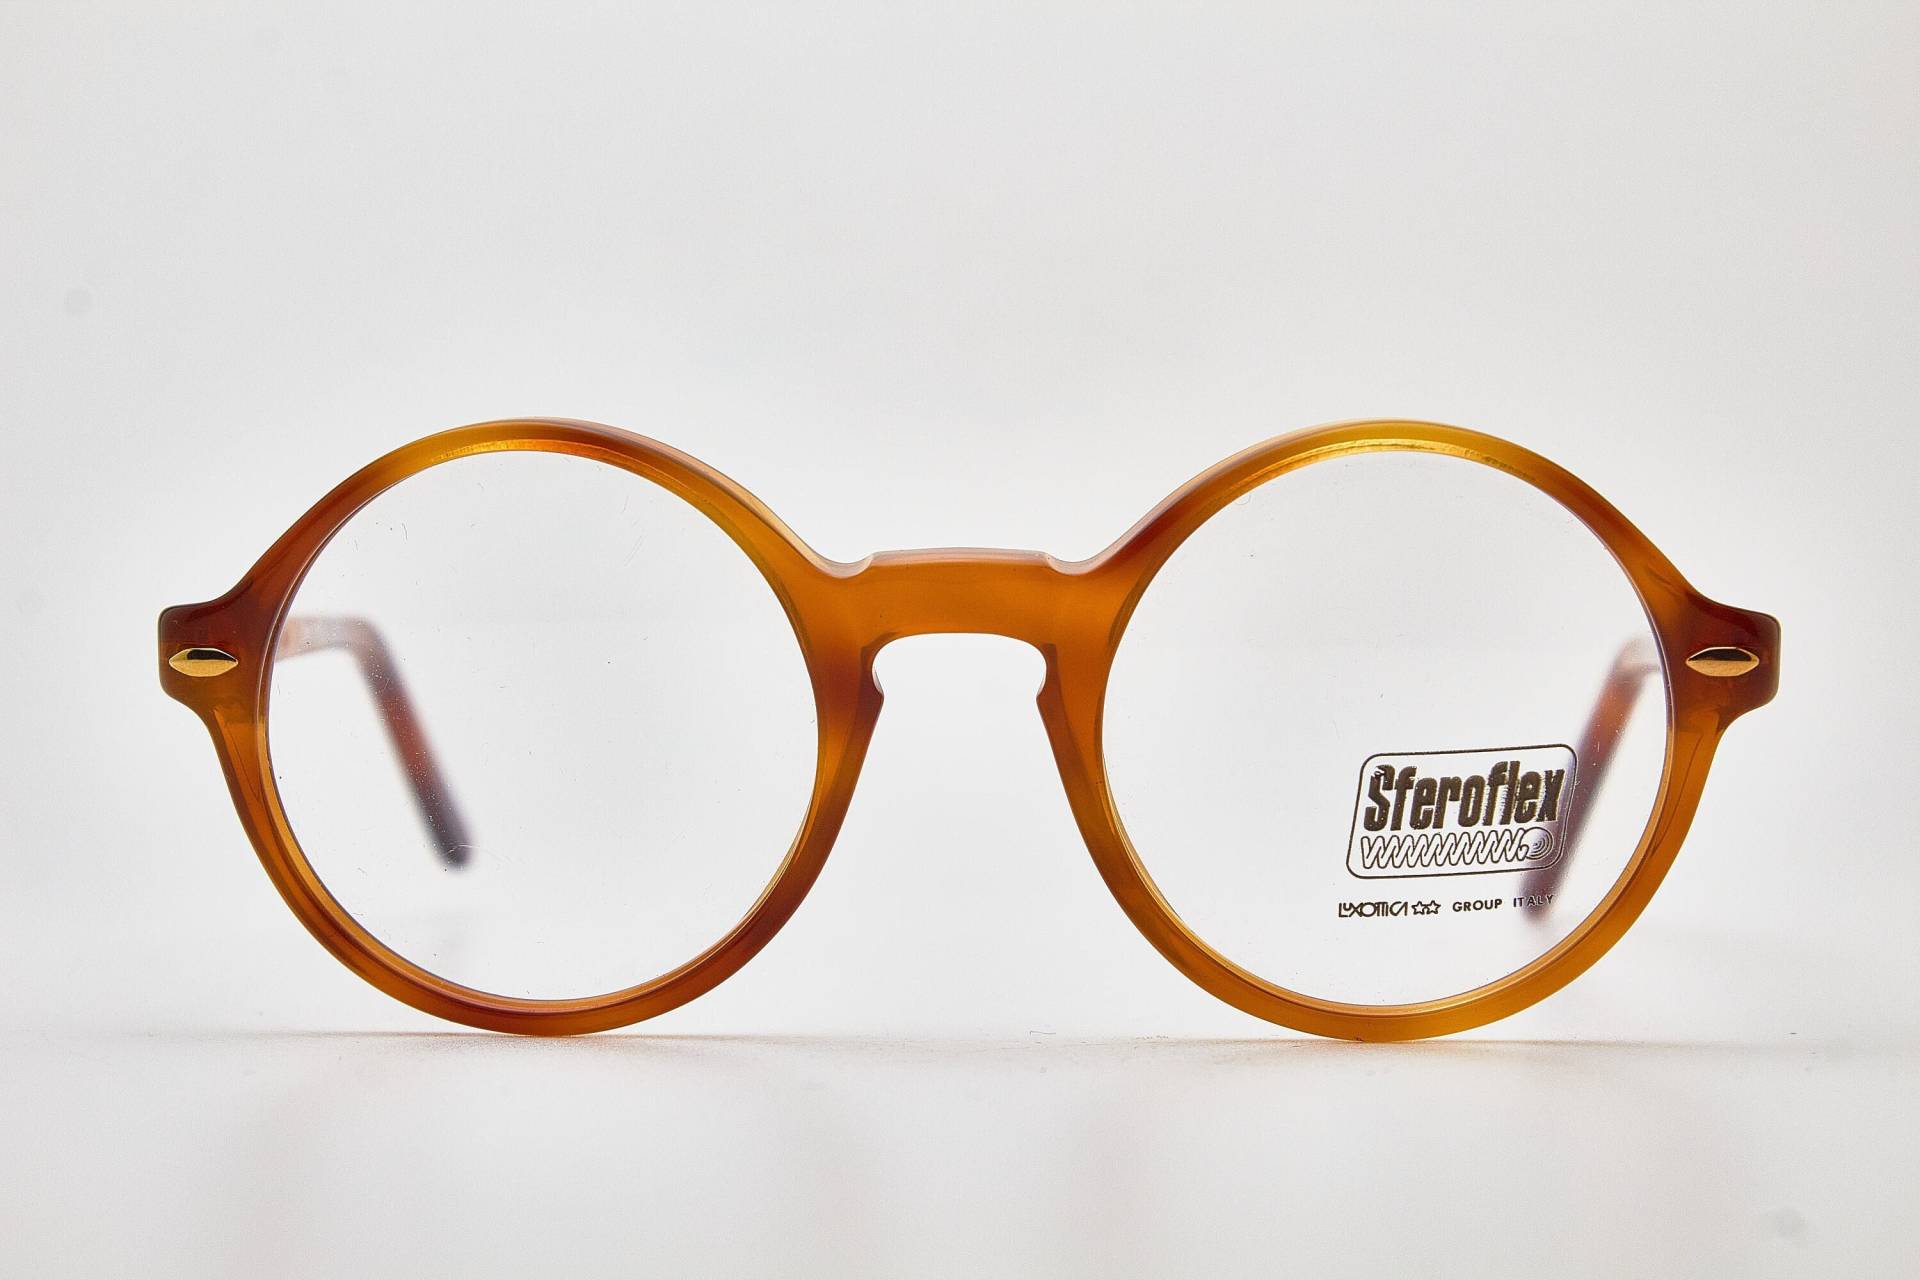 Sferoflex Brille 473 Mit Braunem Rahmen/Hipster Brille/Runde Brille/Vintage Brillengestell/1980Er Sonnenbrille/Runde von VintageGlassesVault